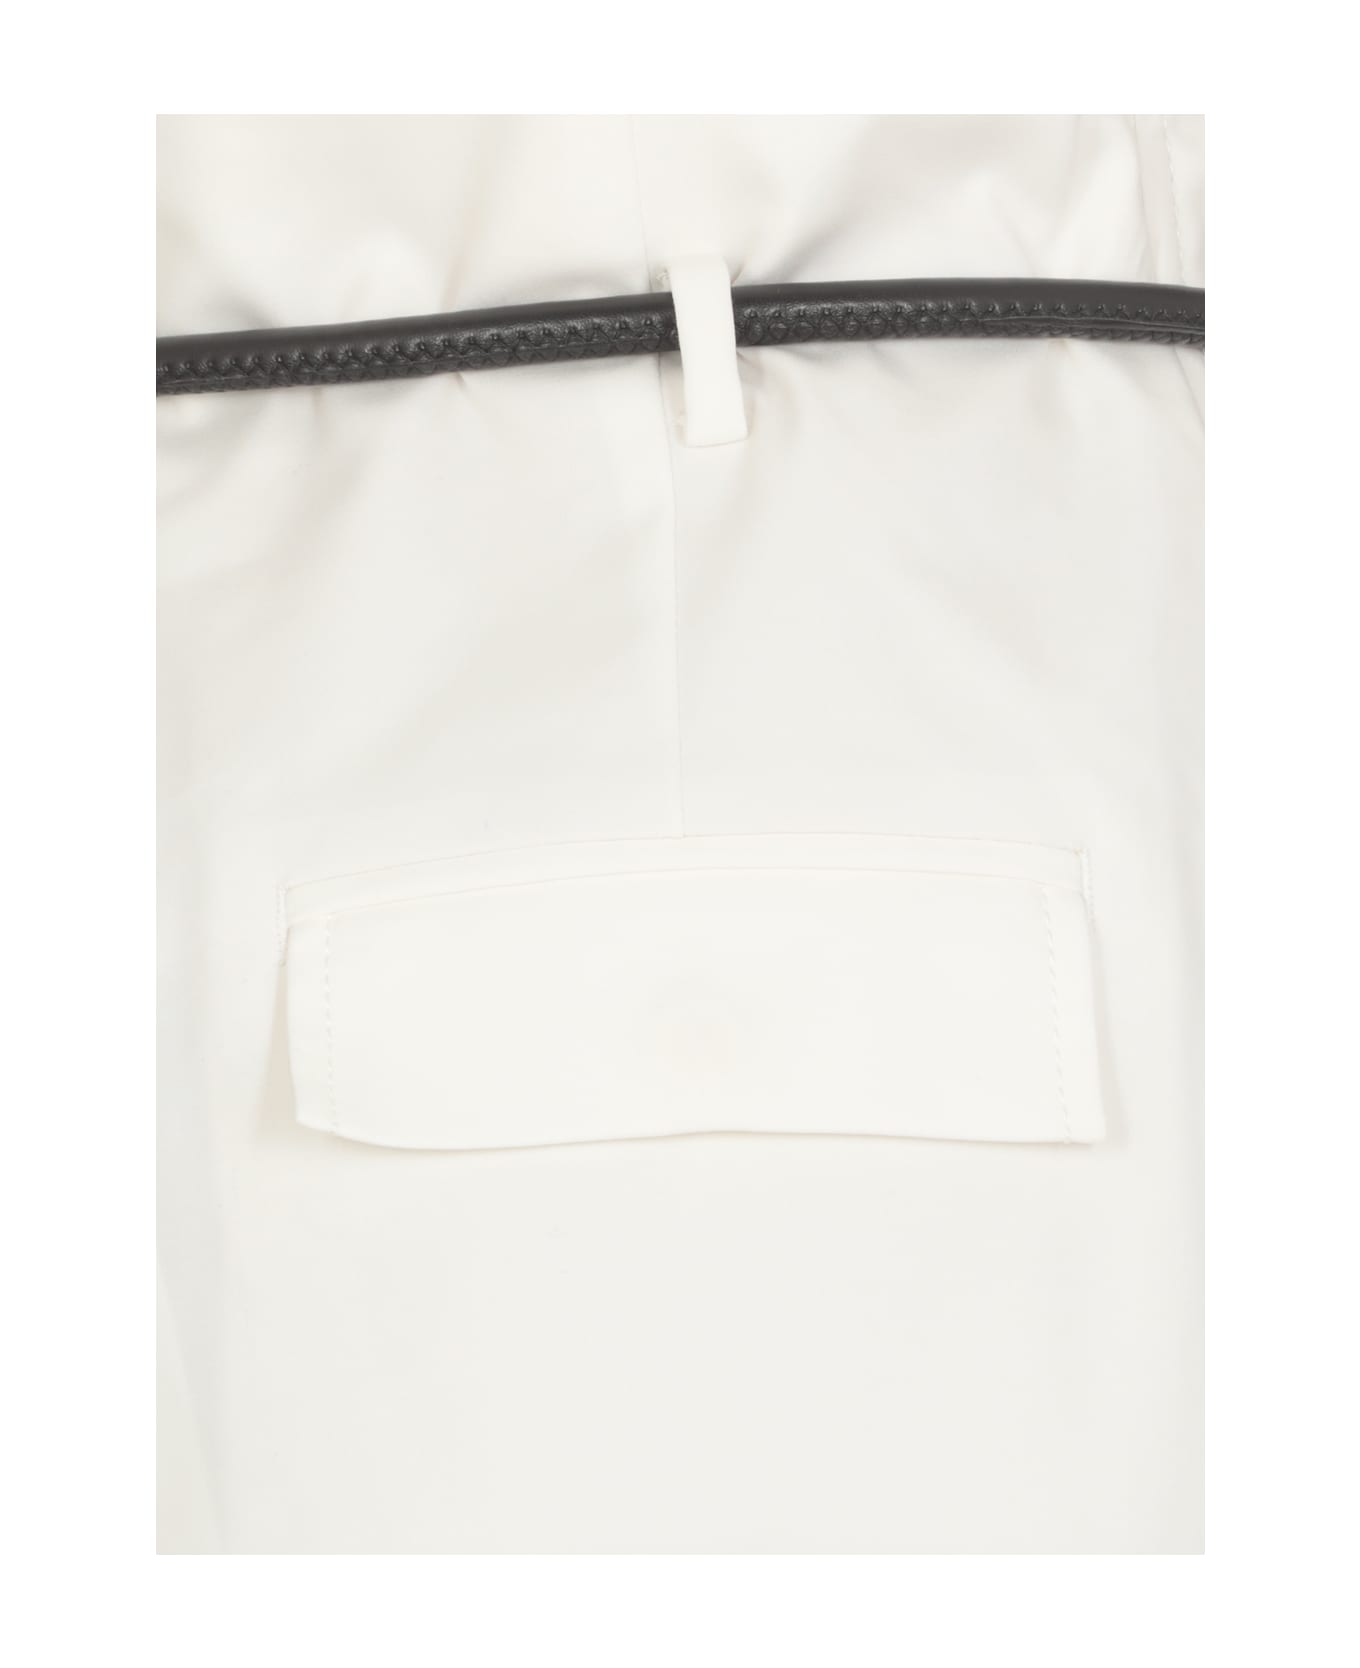 3.1 Phillip Lim Orgmi Shorts - White ショートパンツ